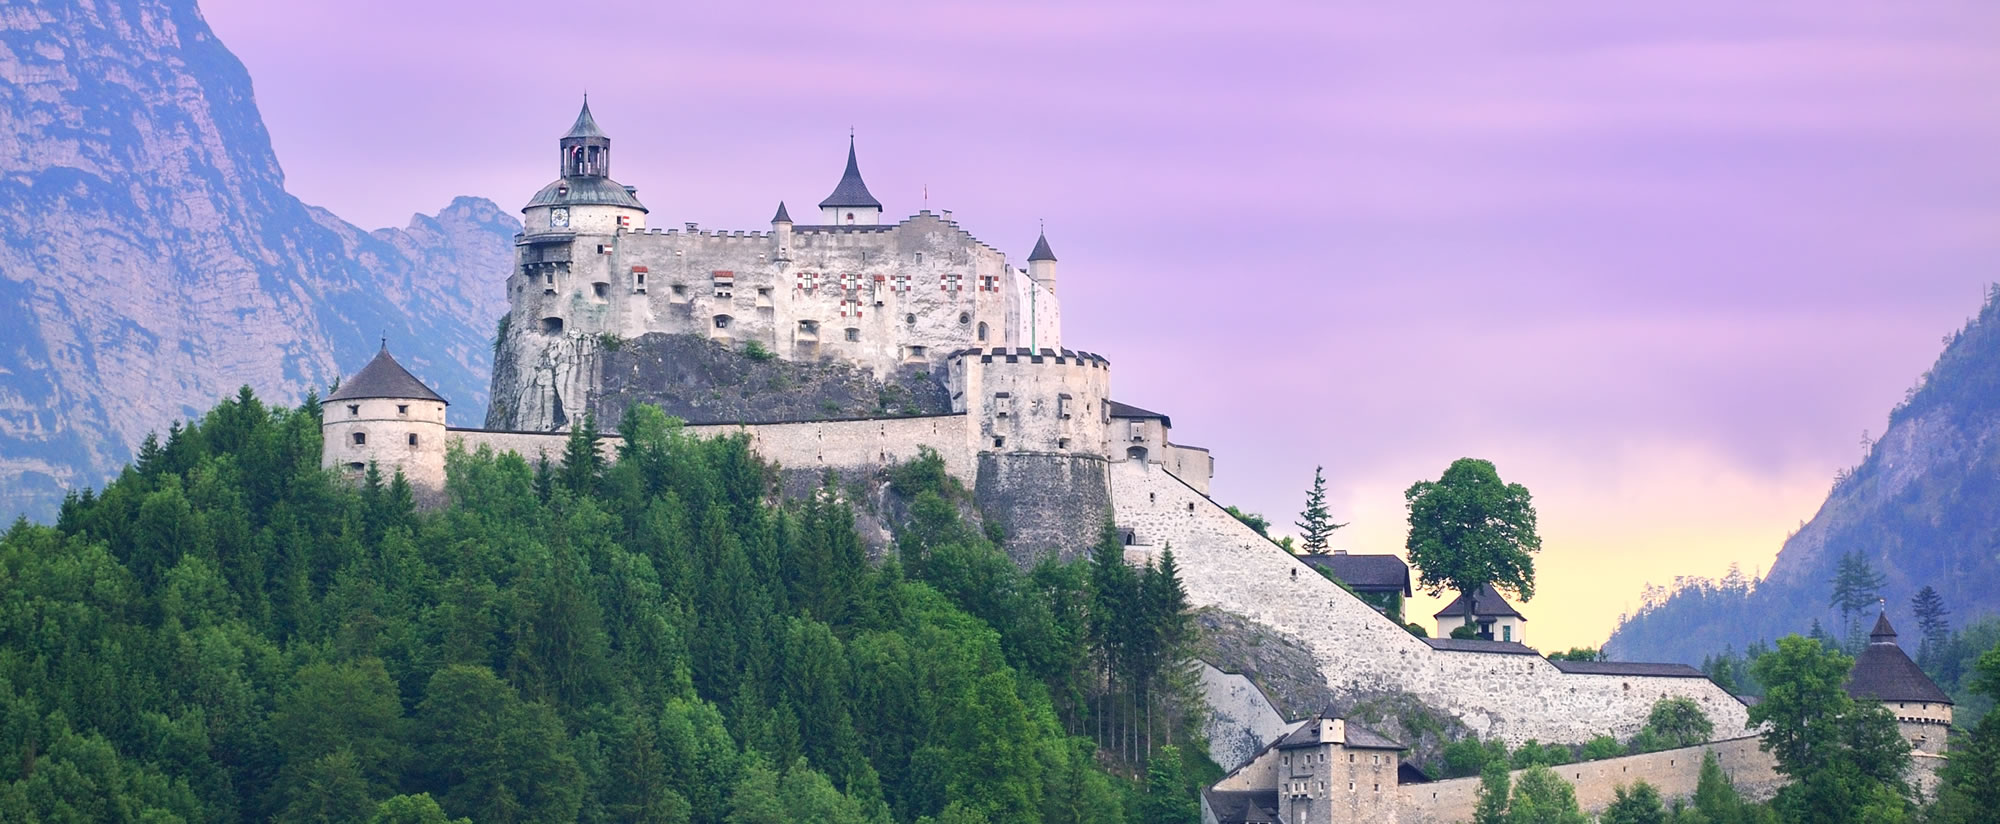 Burg Hohenwerfen, Ausflugsziele im Salzburgerland - Bildnachweis: Shutterstock